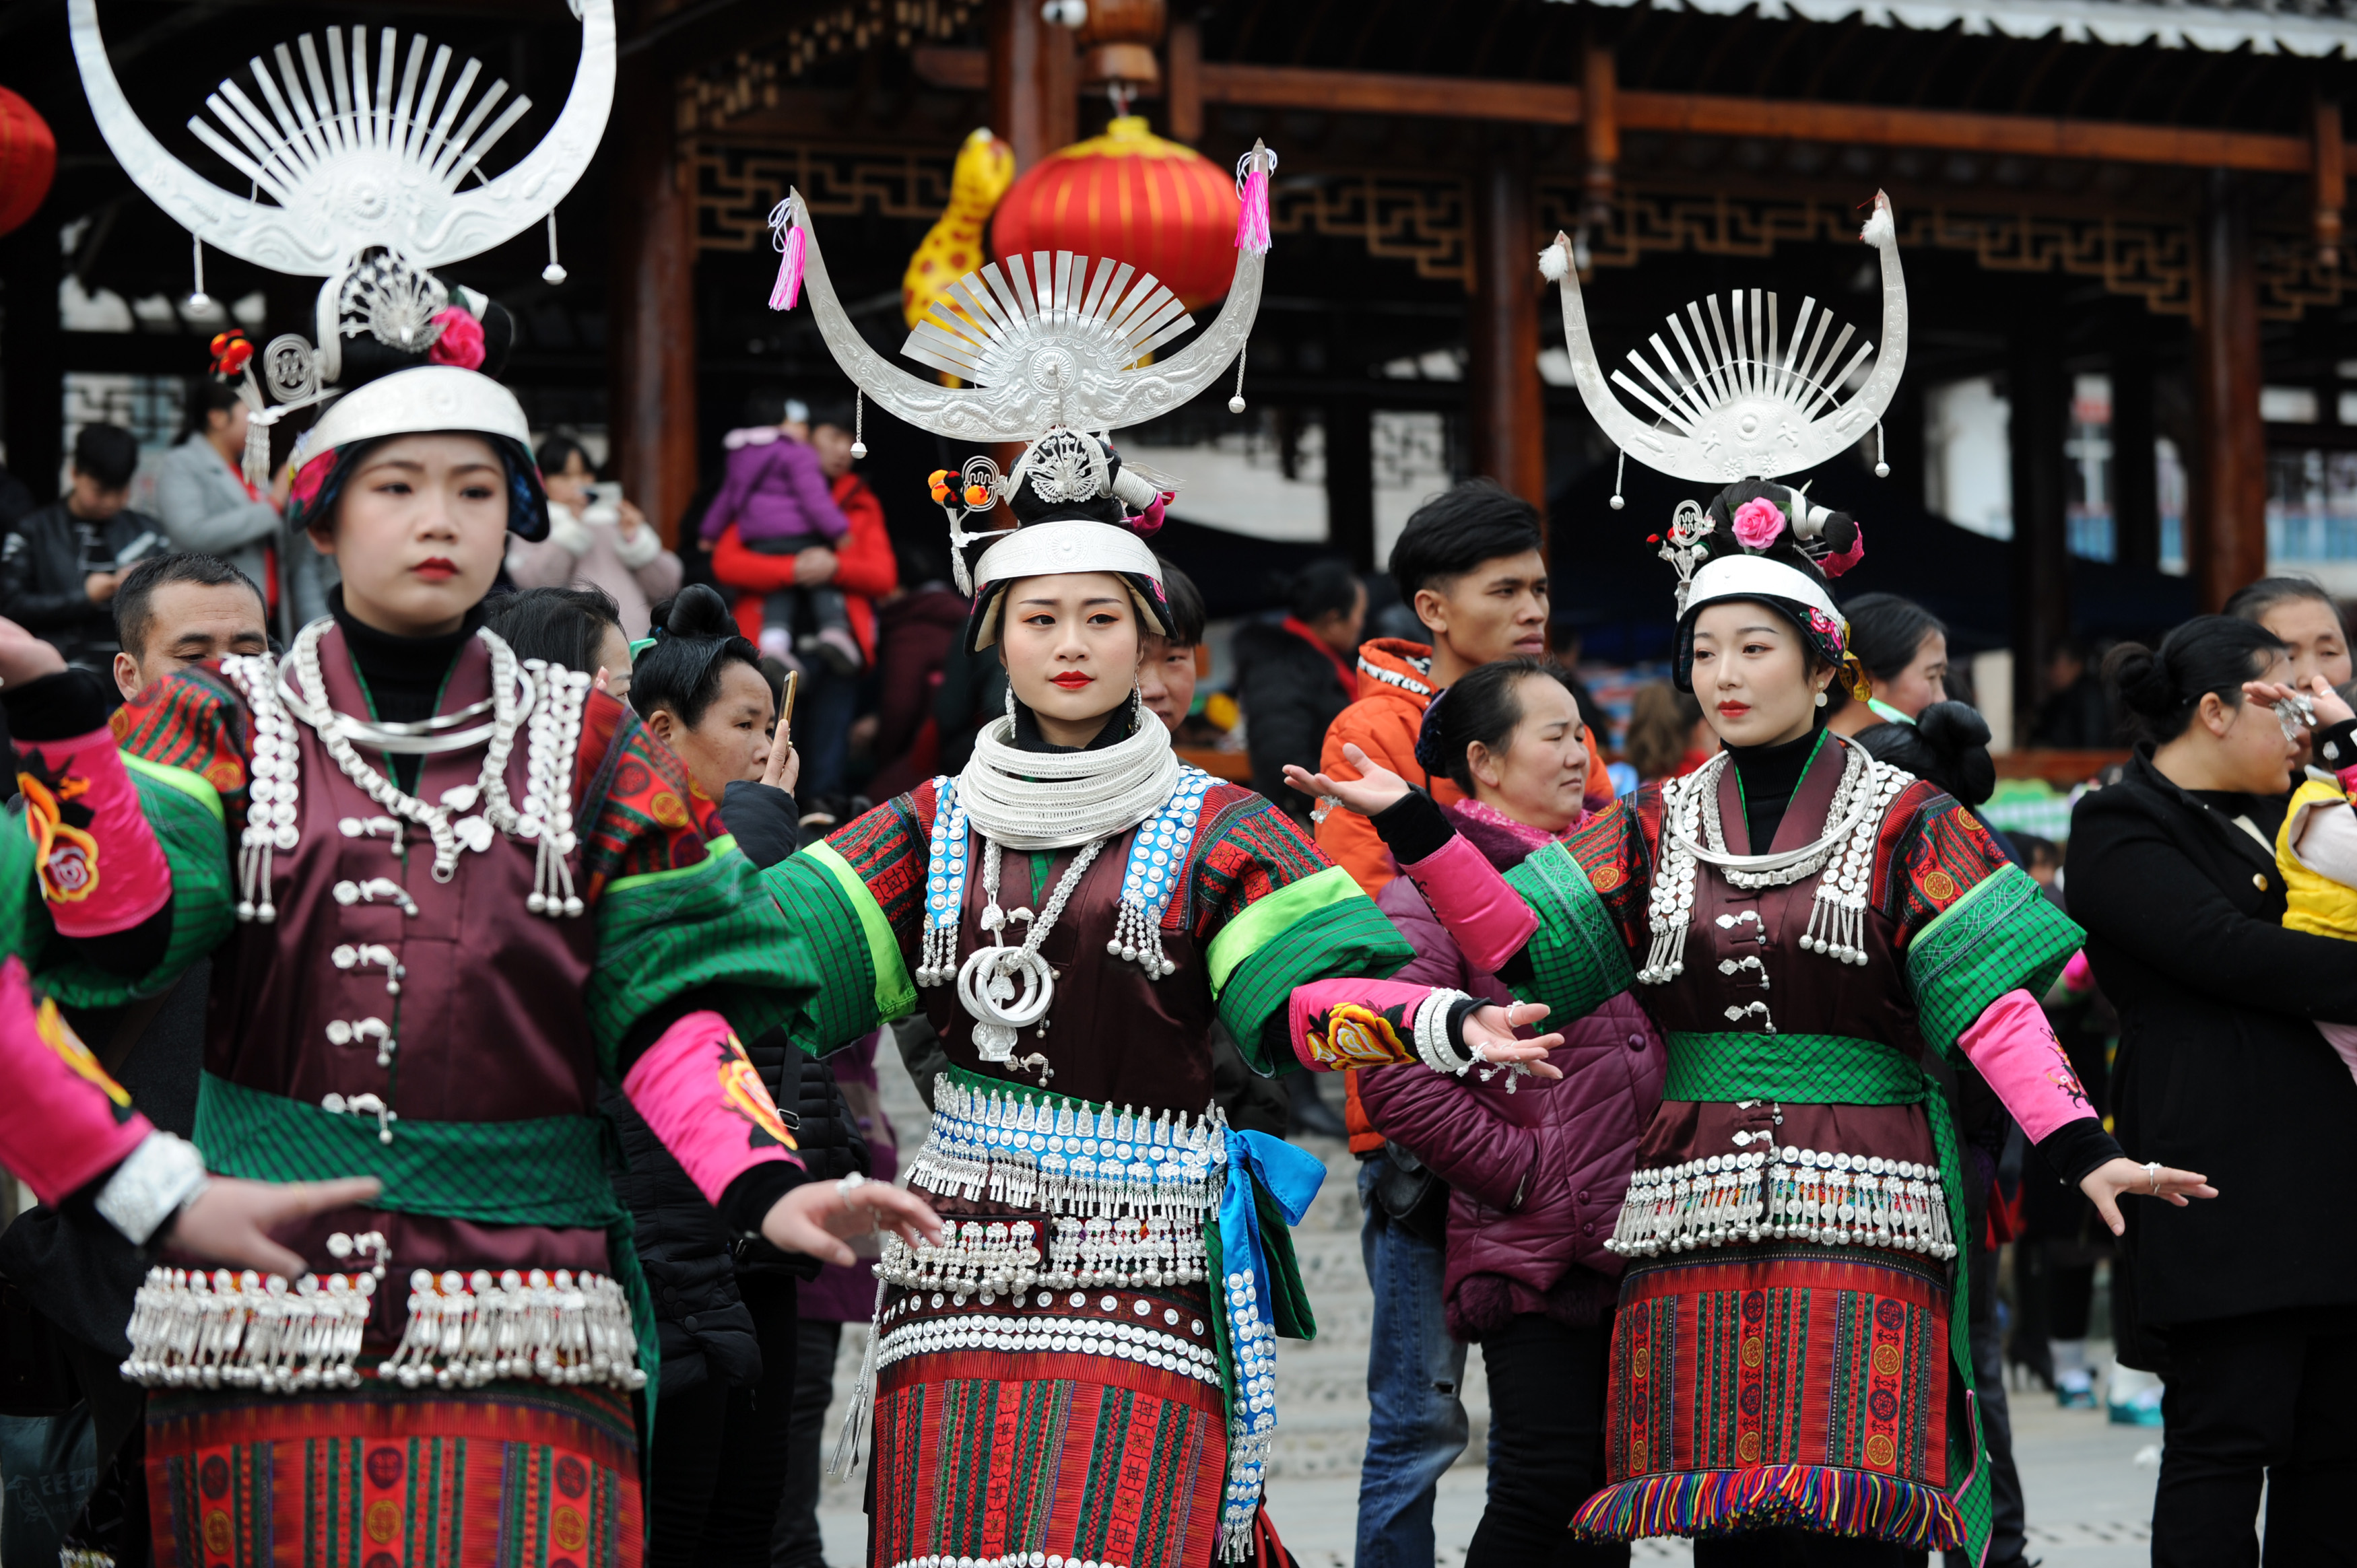 2月24日,在贵州省凯里市舟溪镇,苗族姑娘身着盛装跳芦笙舞